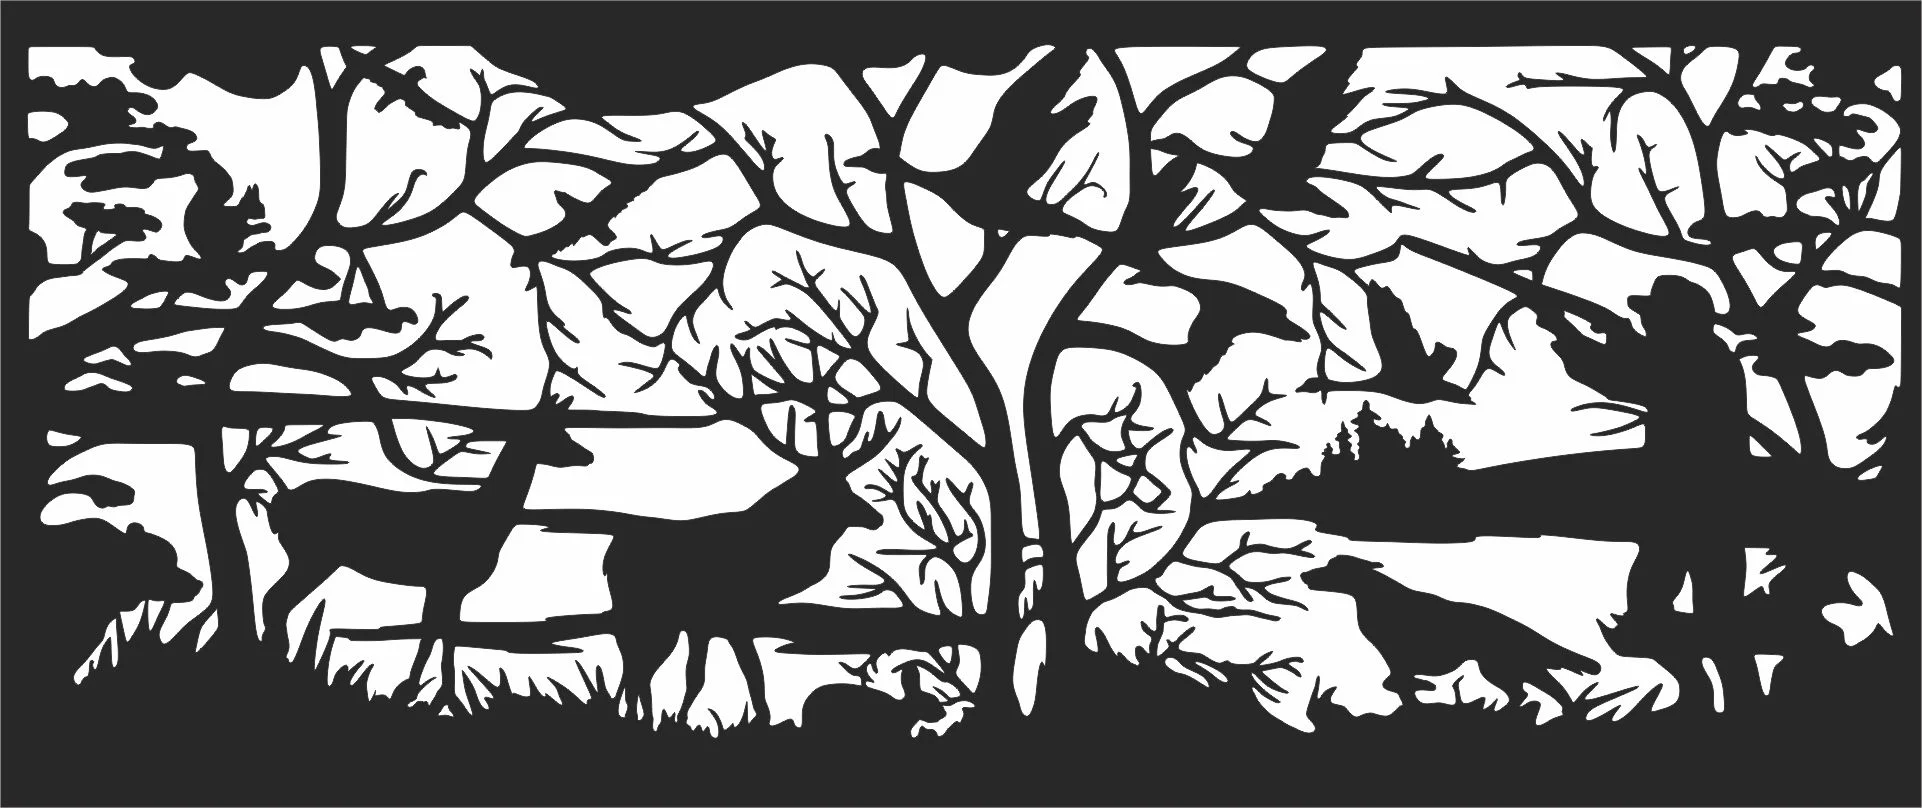 Hunting scene elk deer forest- For Laser Cut DXF CDR SVG Files - free downl...